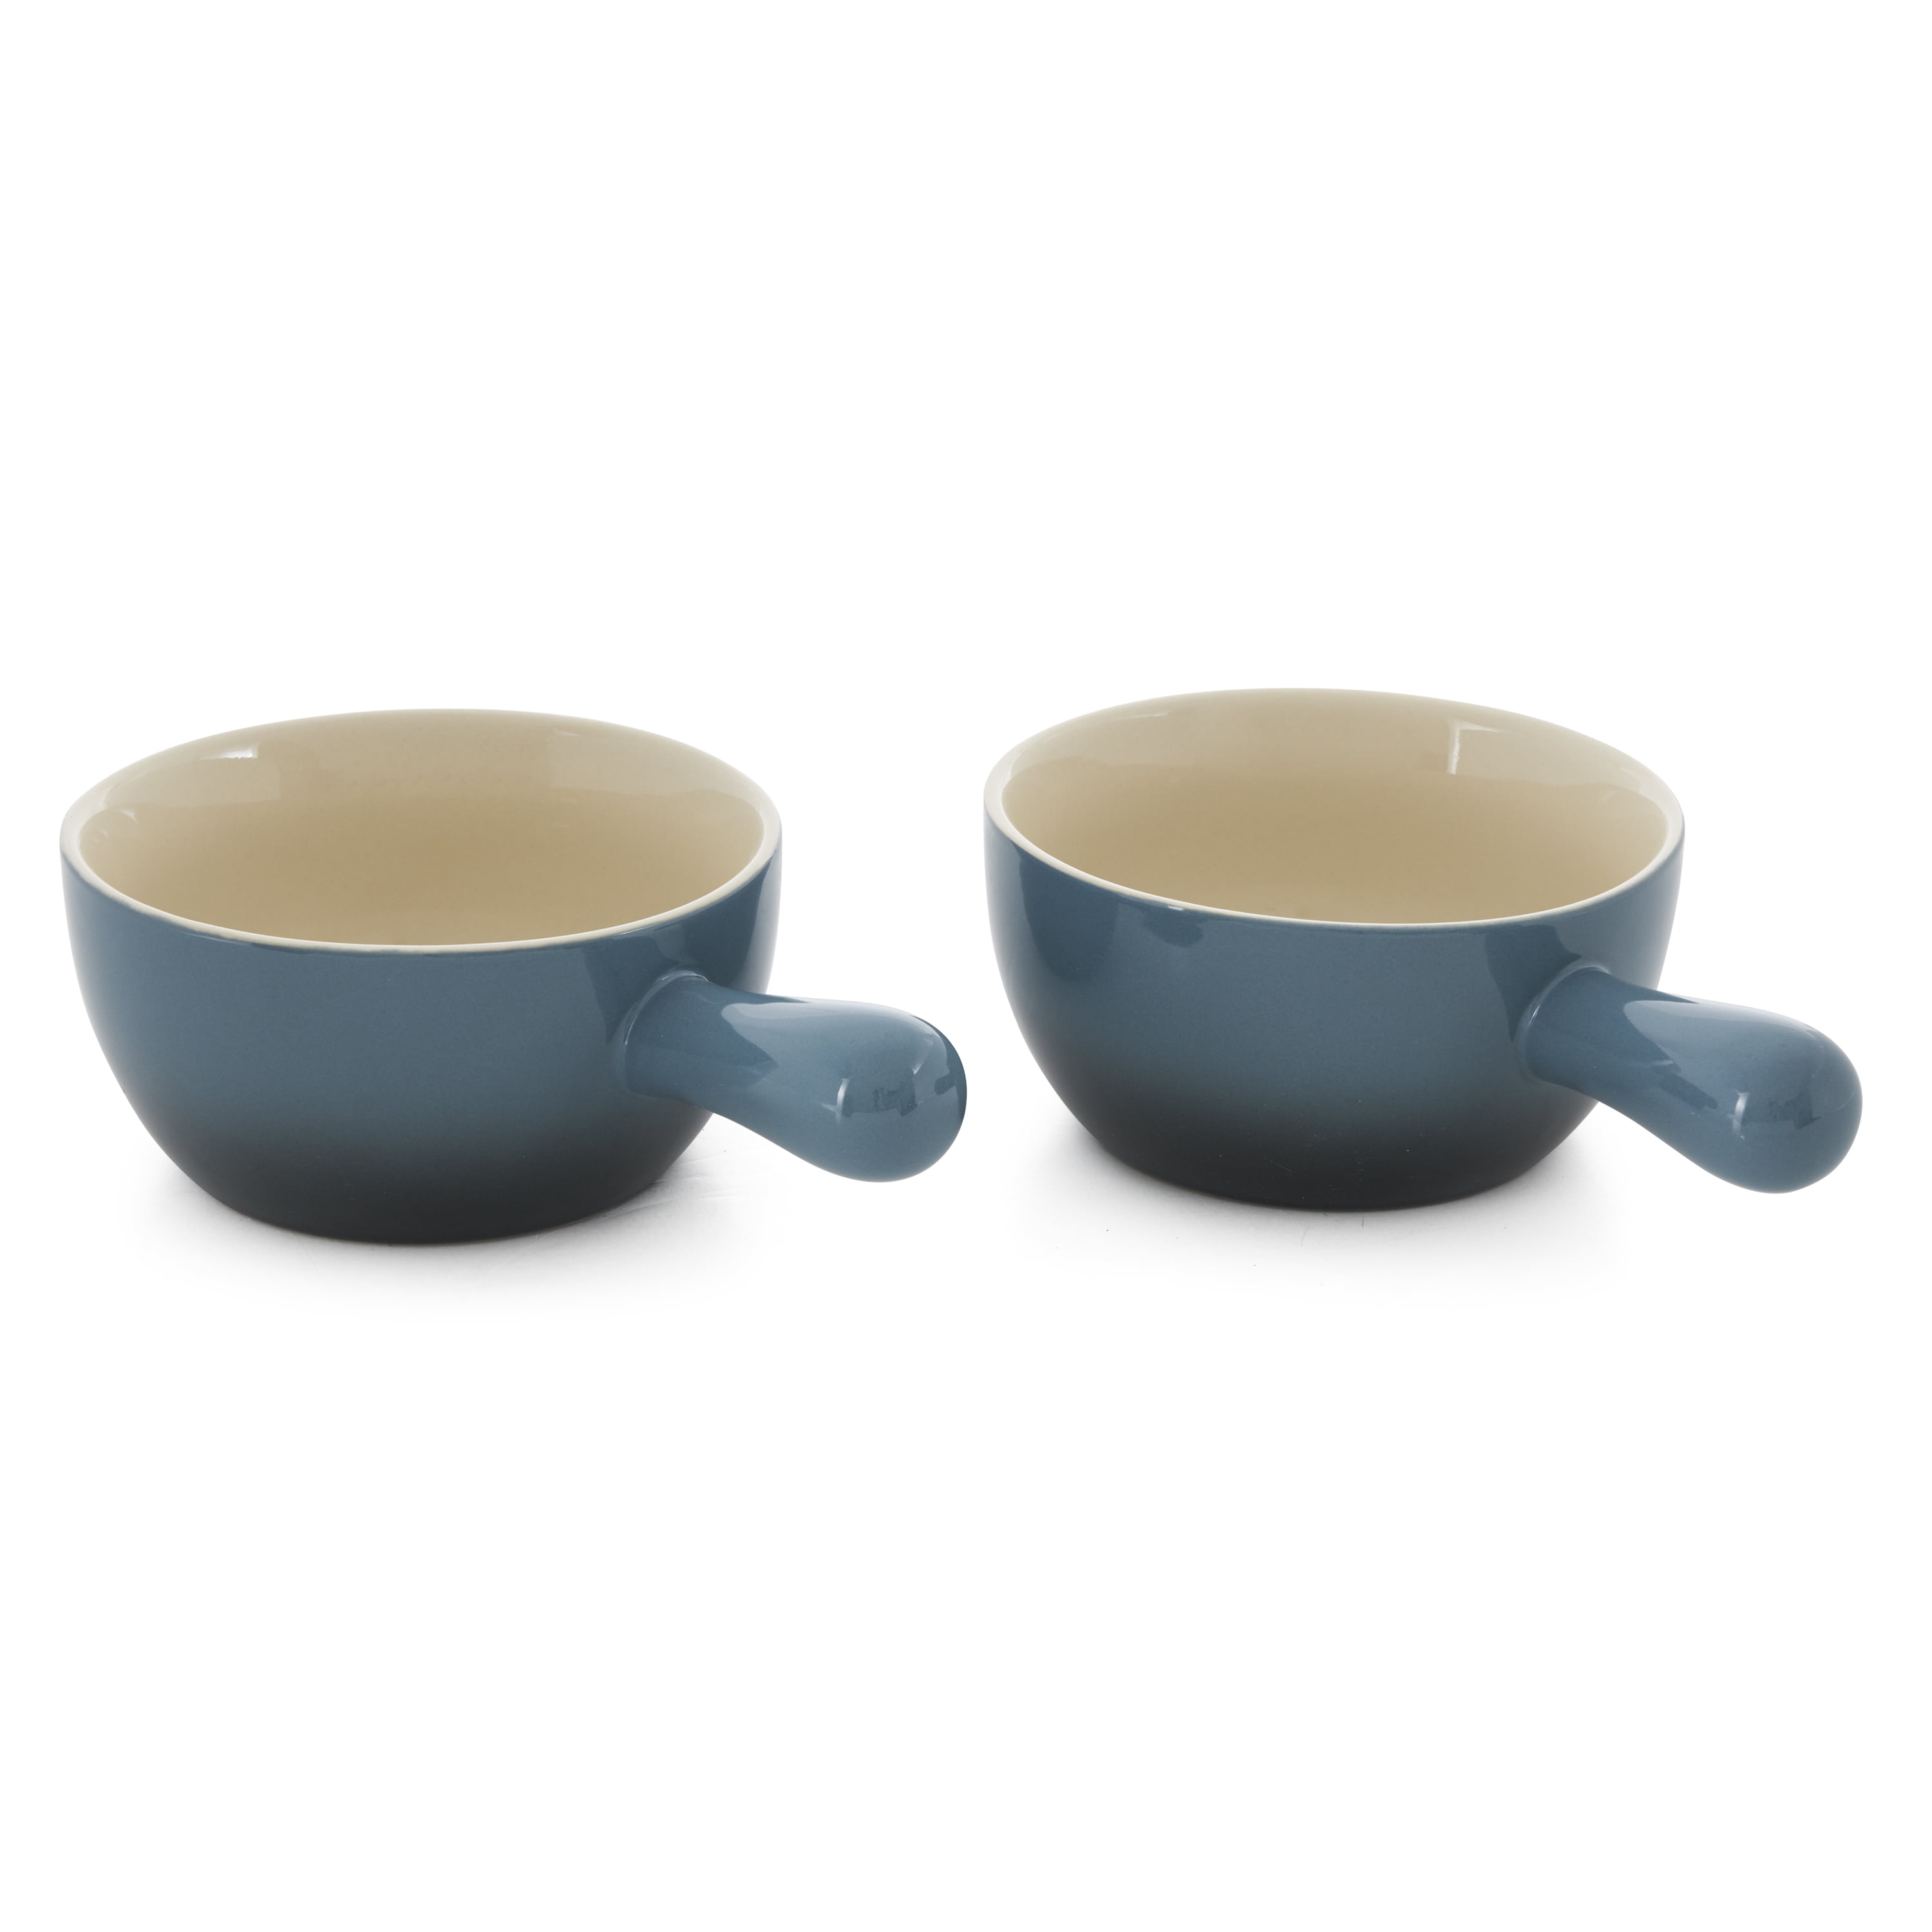 22oz Artisan Stoneware Soup Bowl w/ 2-Pack, Gray Gradient - Walmart.com